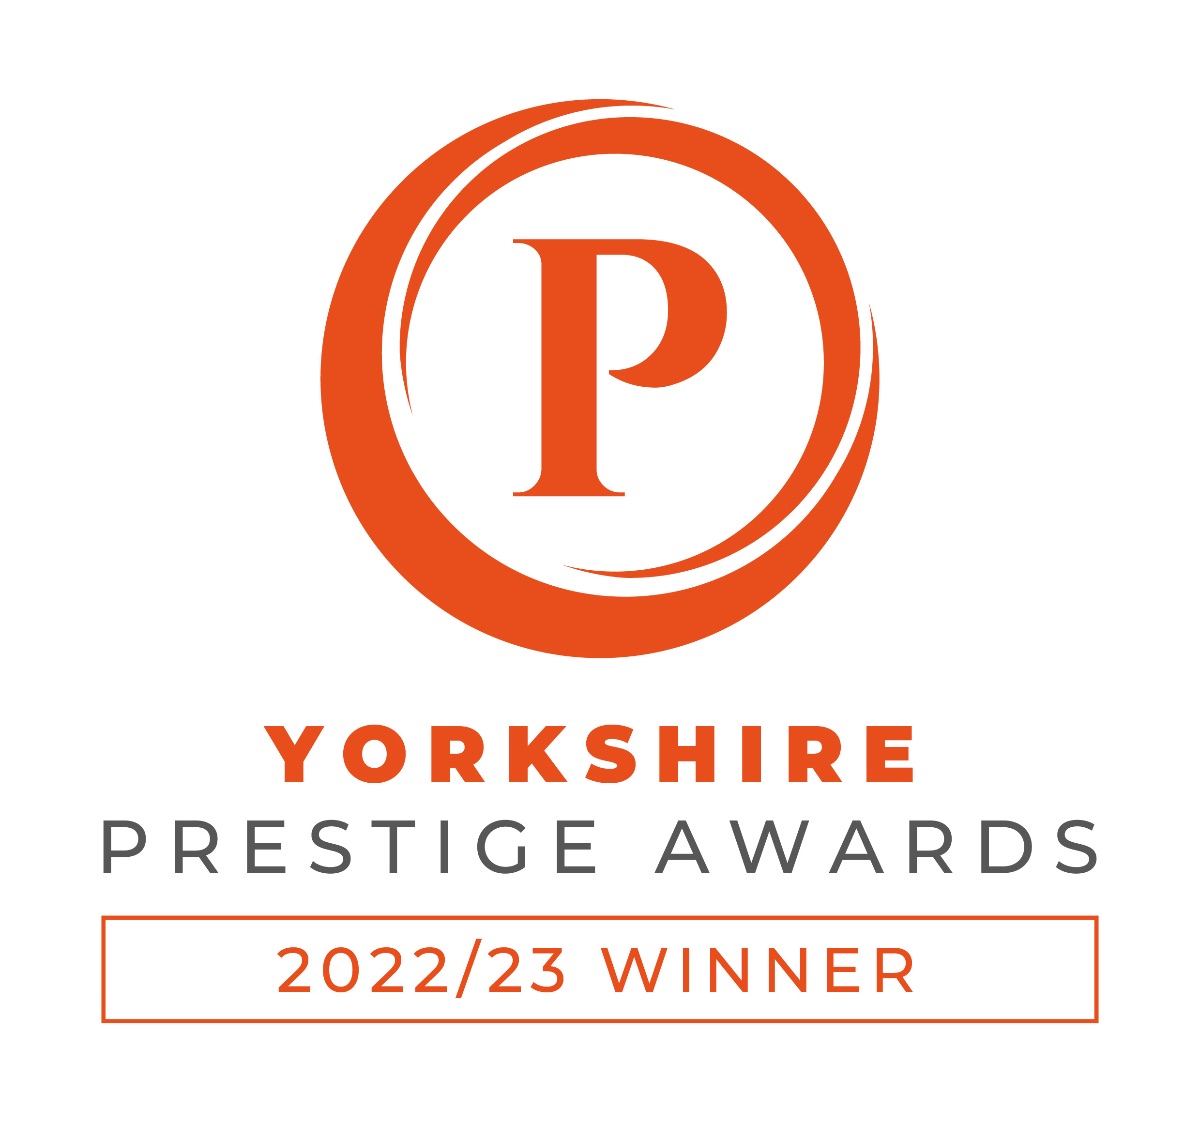 Yorkshire Prestige Award three years running, Cake maker.